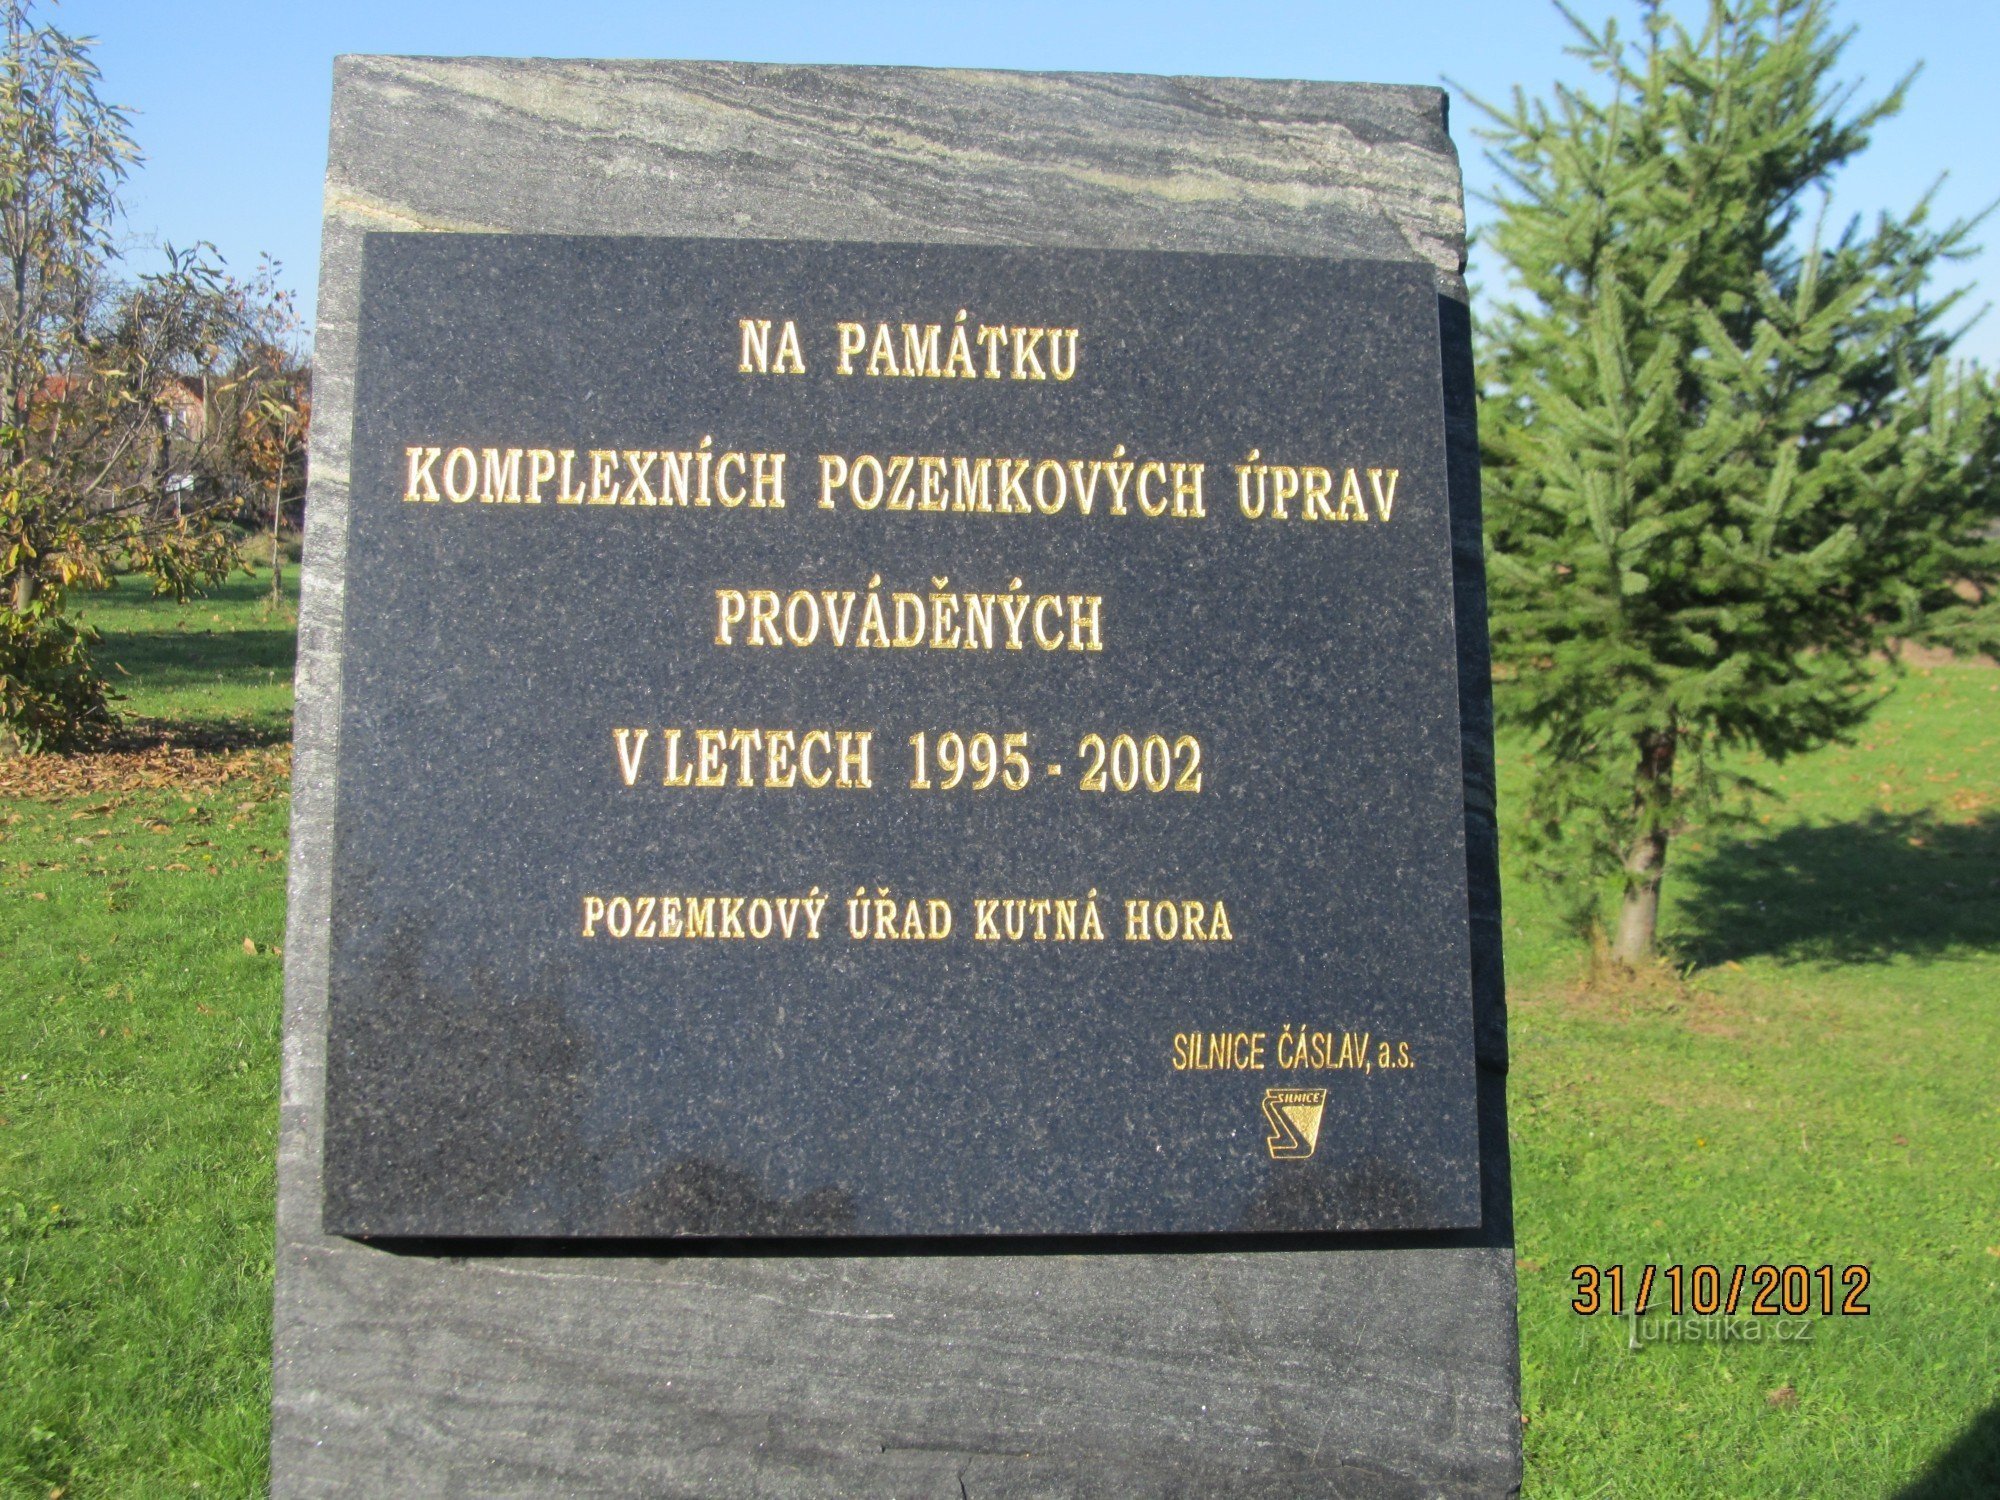 Đài tưởng niệm ở Hlízov trước nghĩa trang - dòng chữ trên đài tưởng niệm